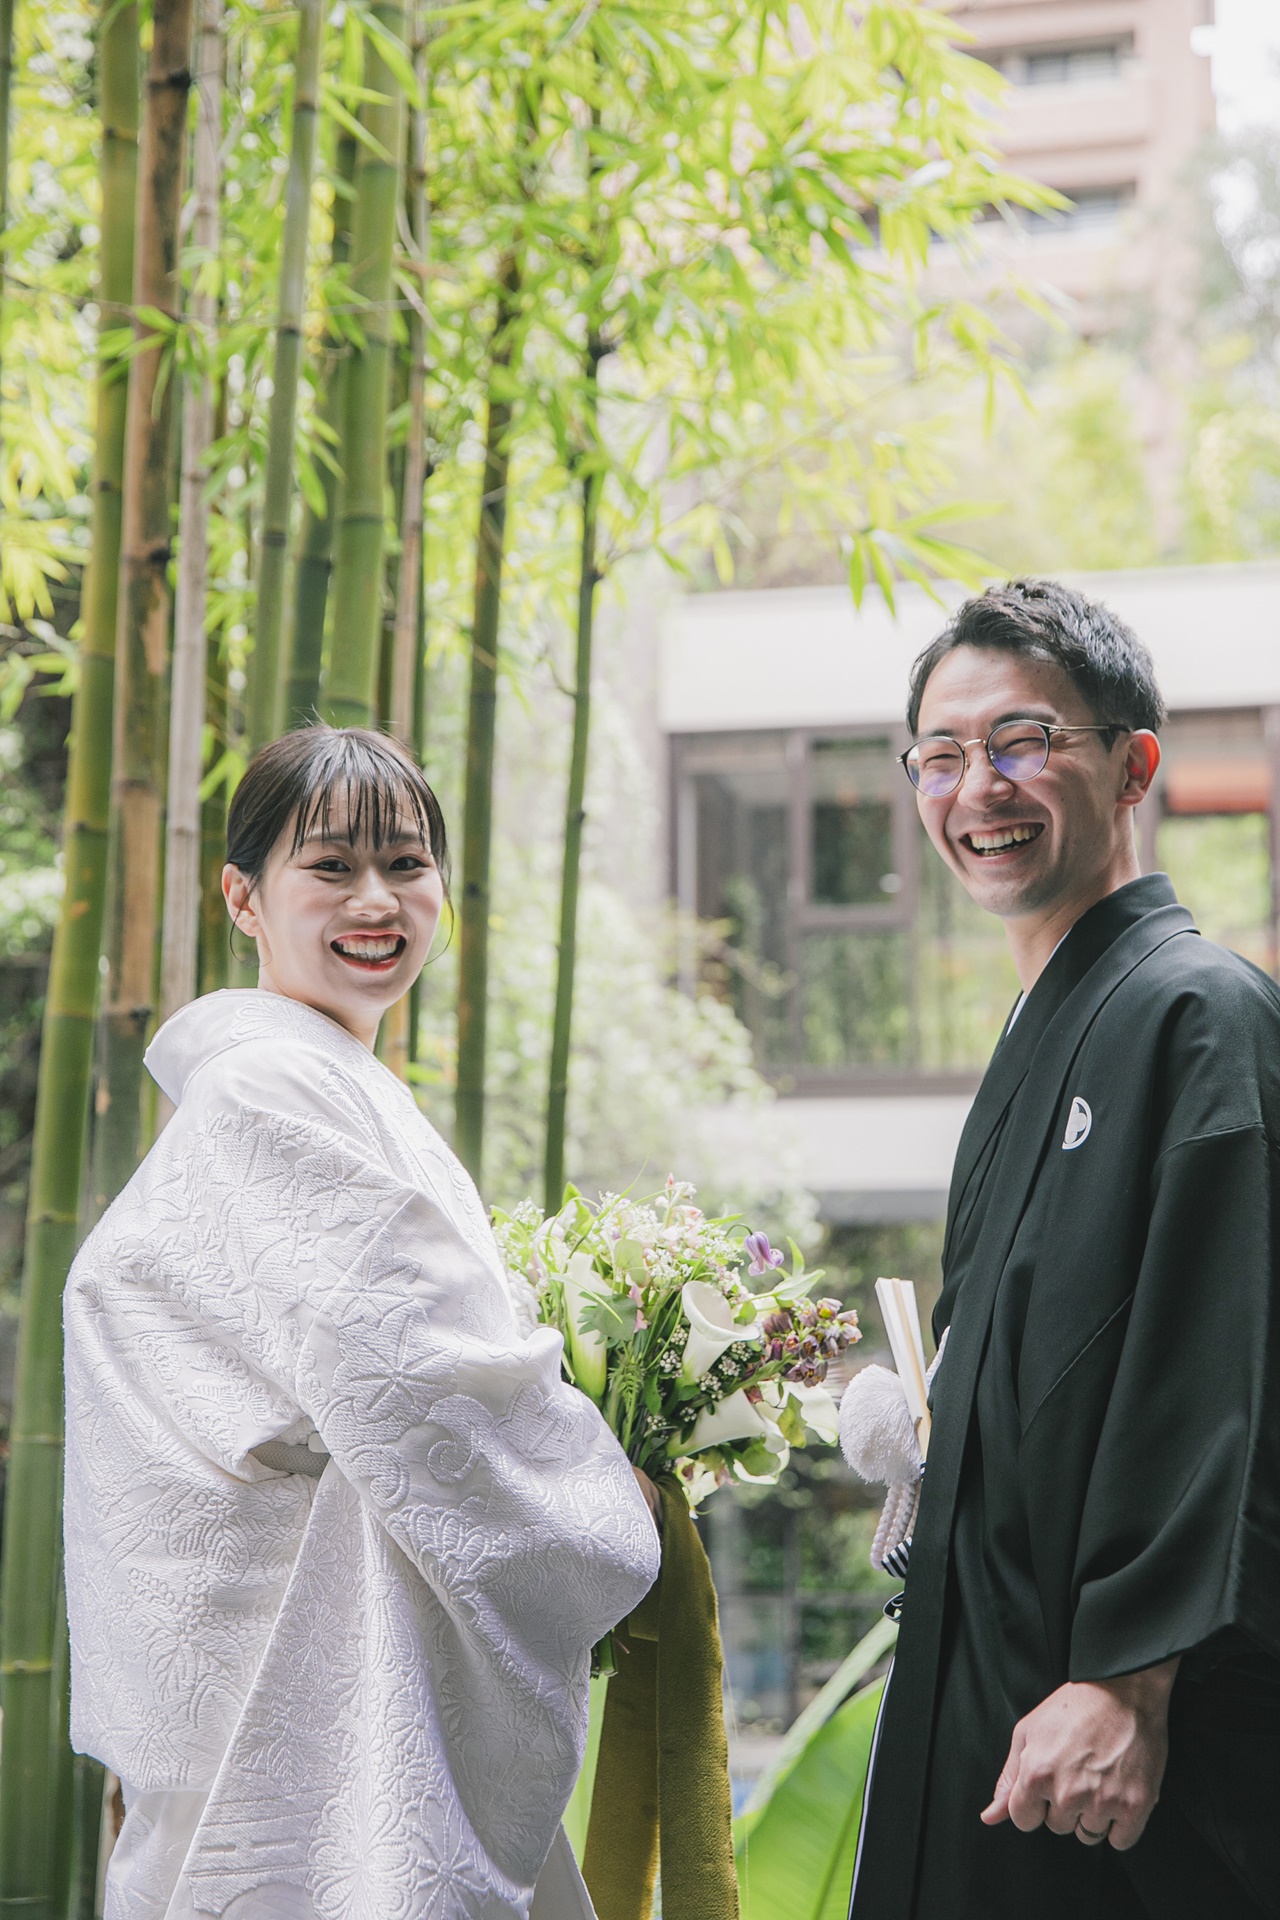 結婚式当日には行くことのないレストラン前の場所は、和装が映える竹をバックにした日本らしい雰囲気の写真をお撮りいただけます